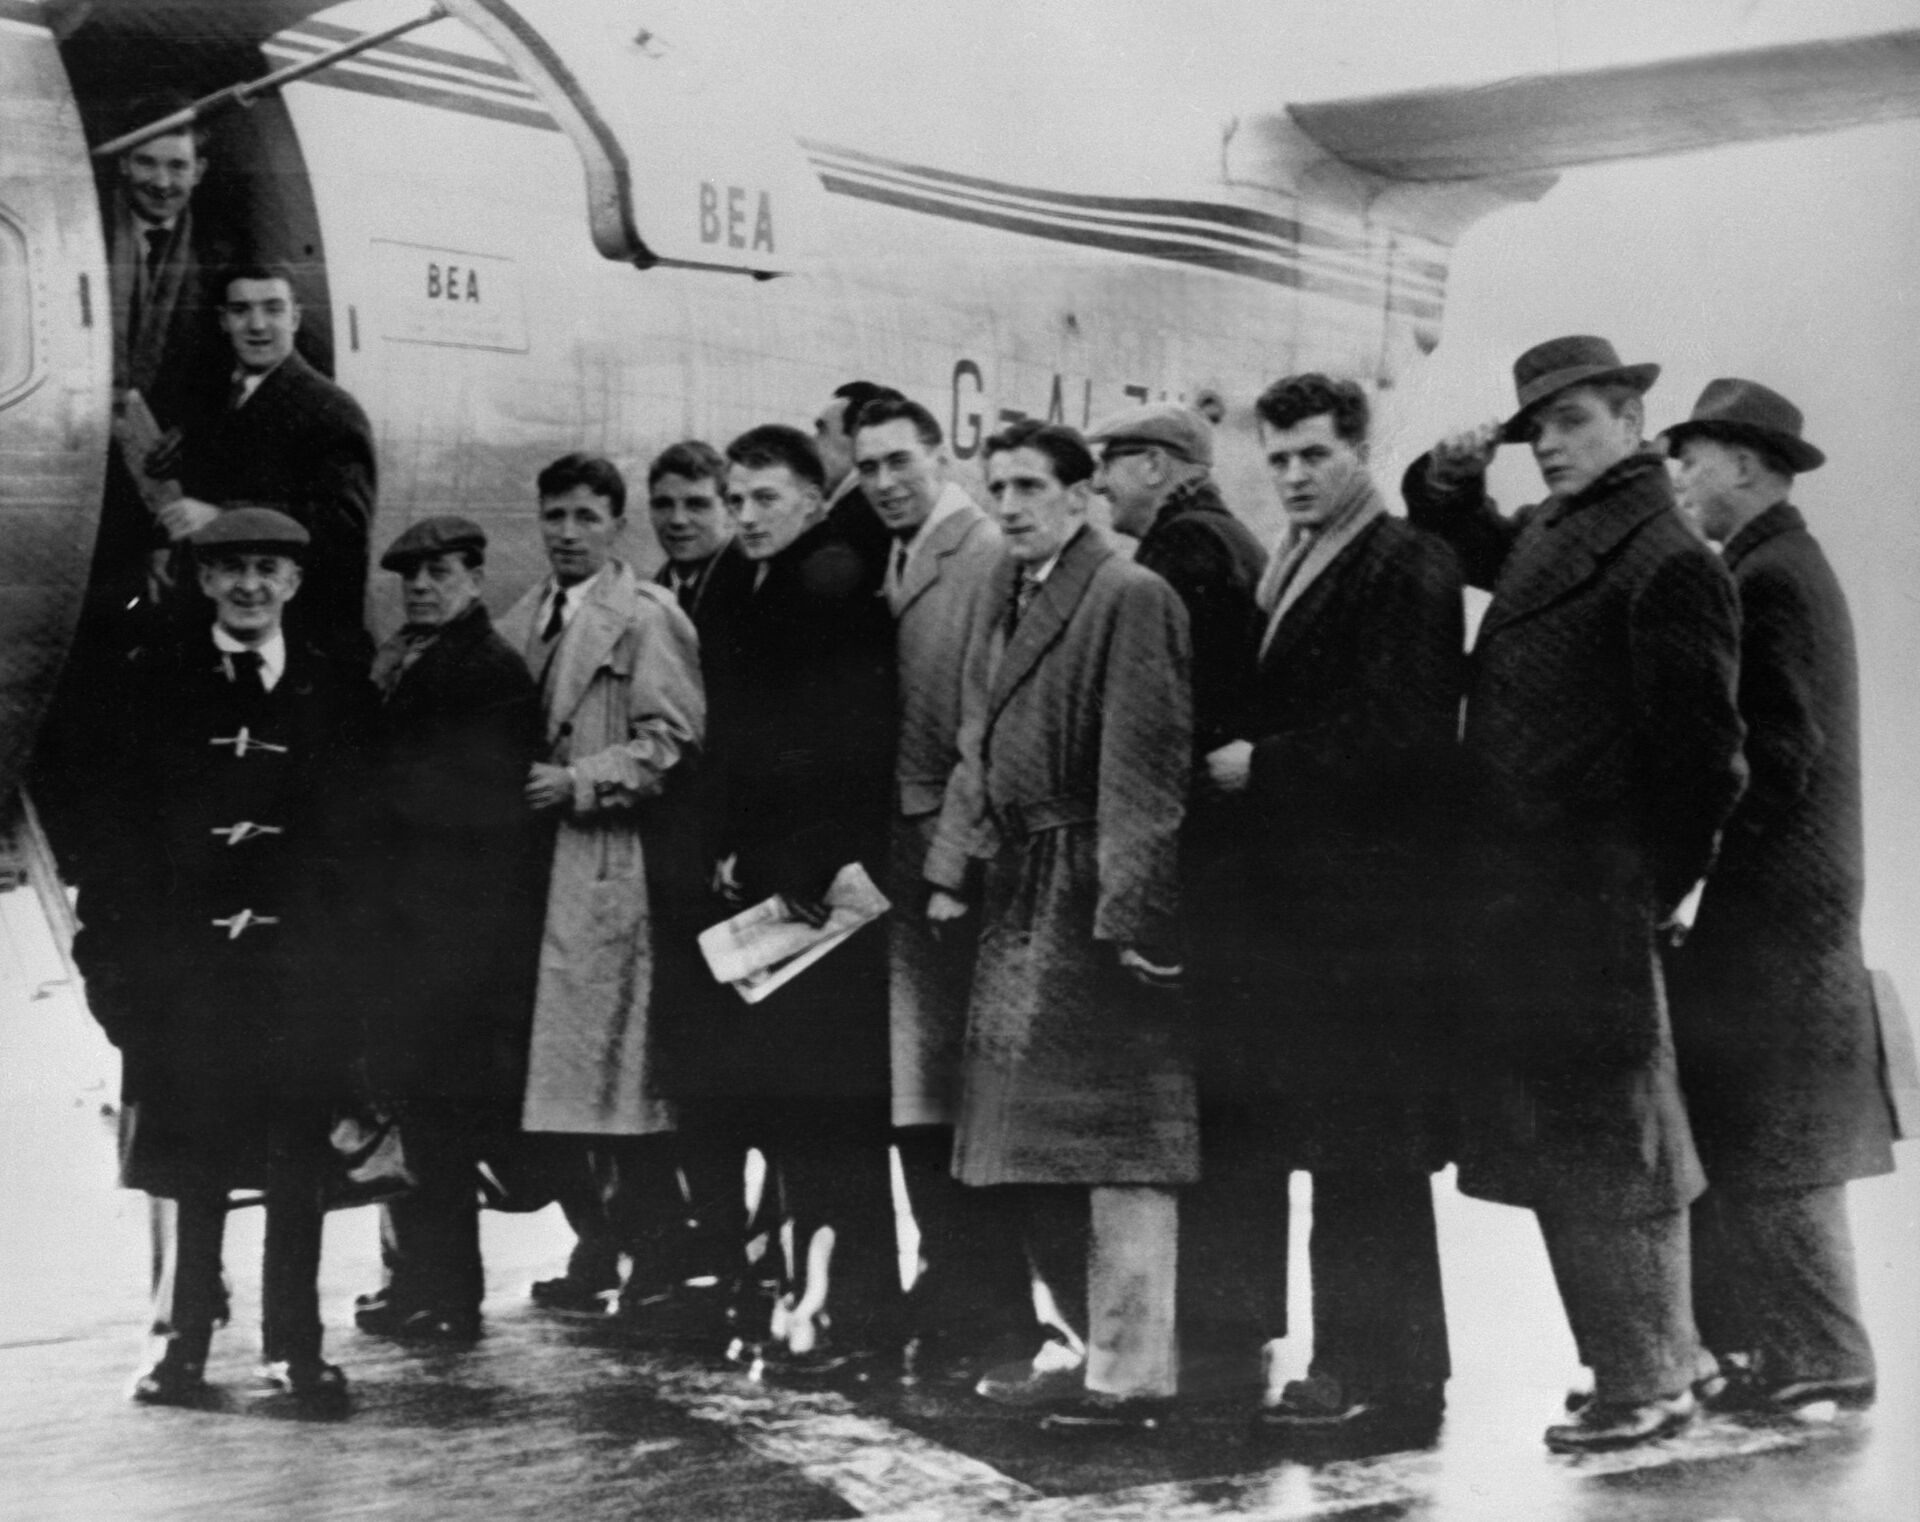 Футболисты Манчестер Юнайтед, персонал клуба и журналисты перед посадкой в самолёт в аэропорту Манчестера на матч с Црвеной Звездой - РИА Новости, 1920, 06.02.2020